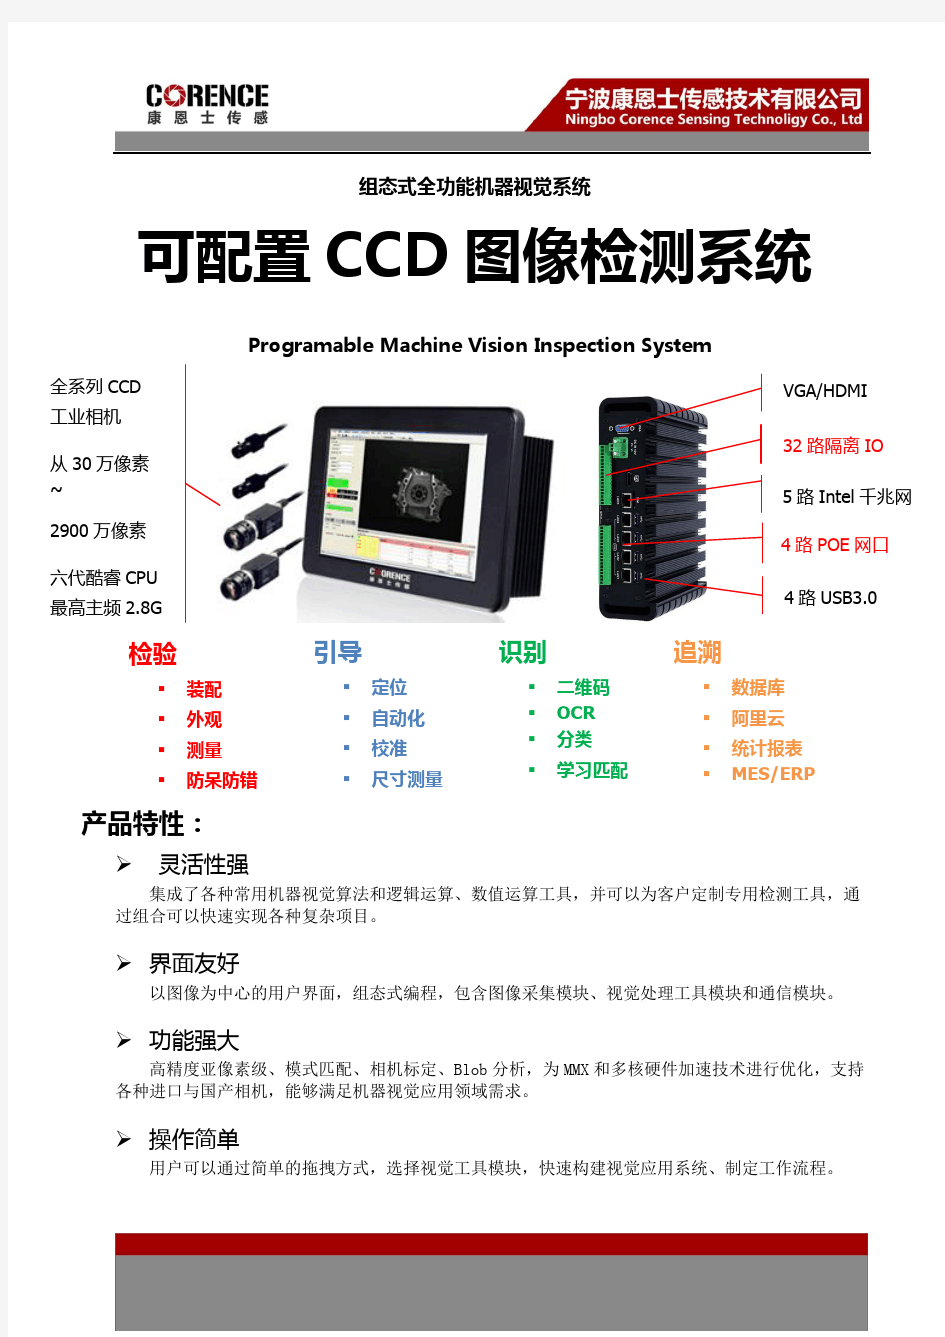 康恩士-智能CCD图像检测(机器视觉)系统(2018_4P)